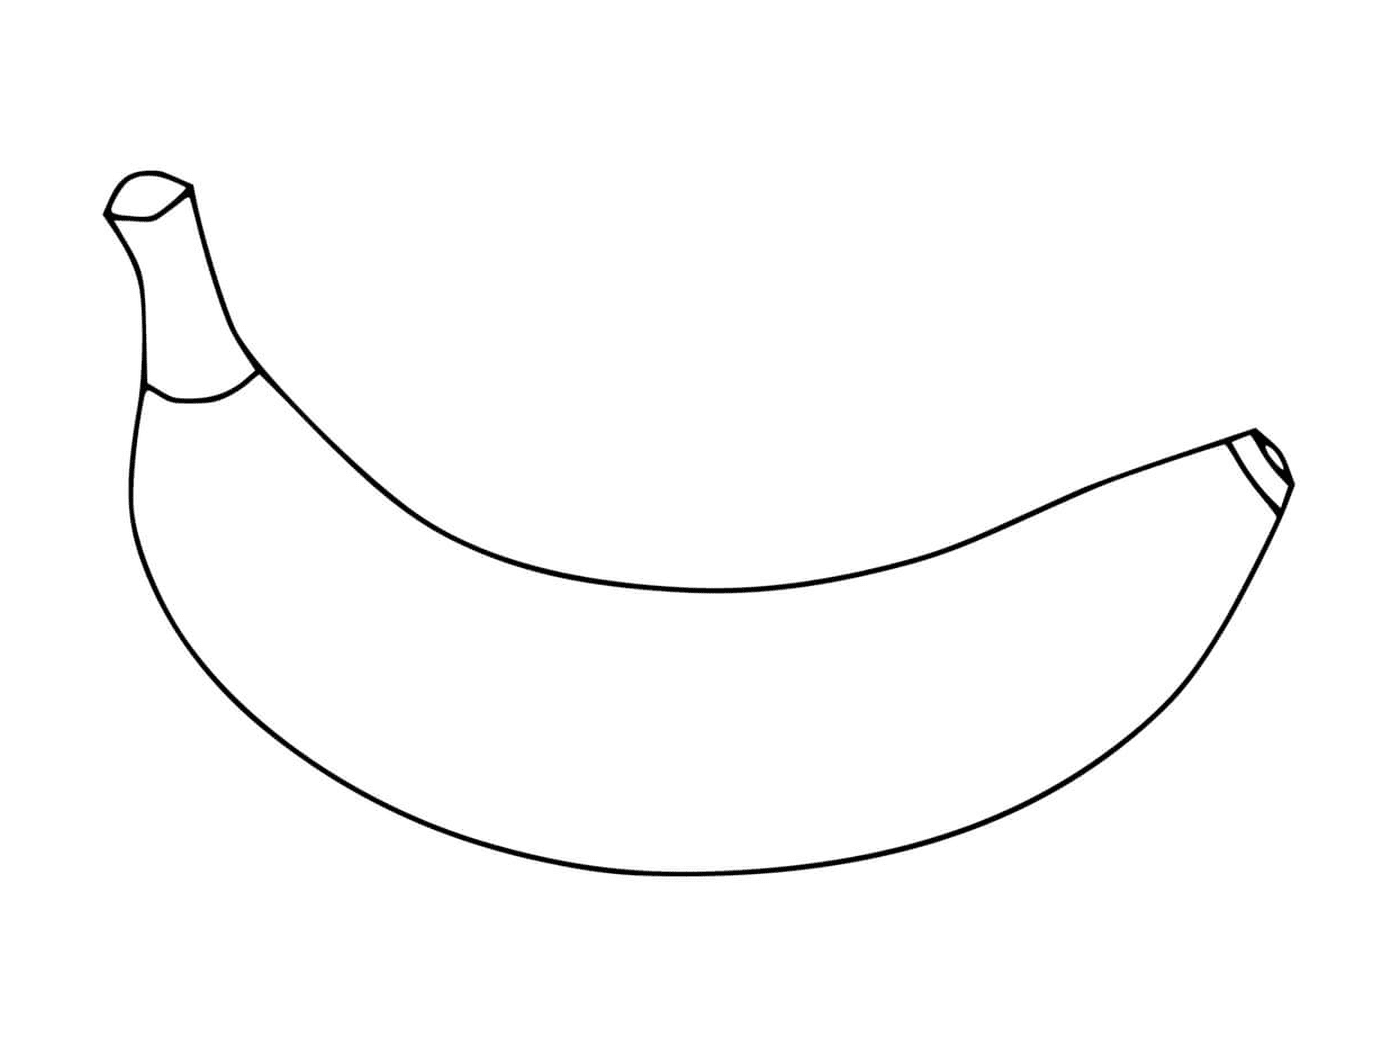  Una foto de un plátano 